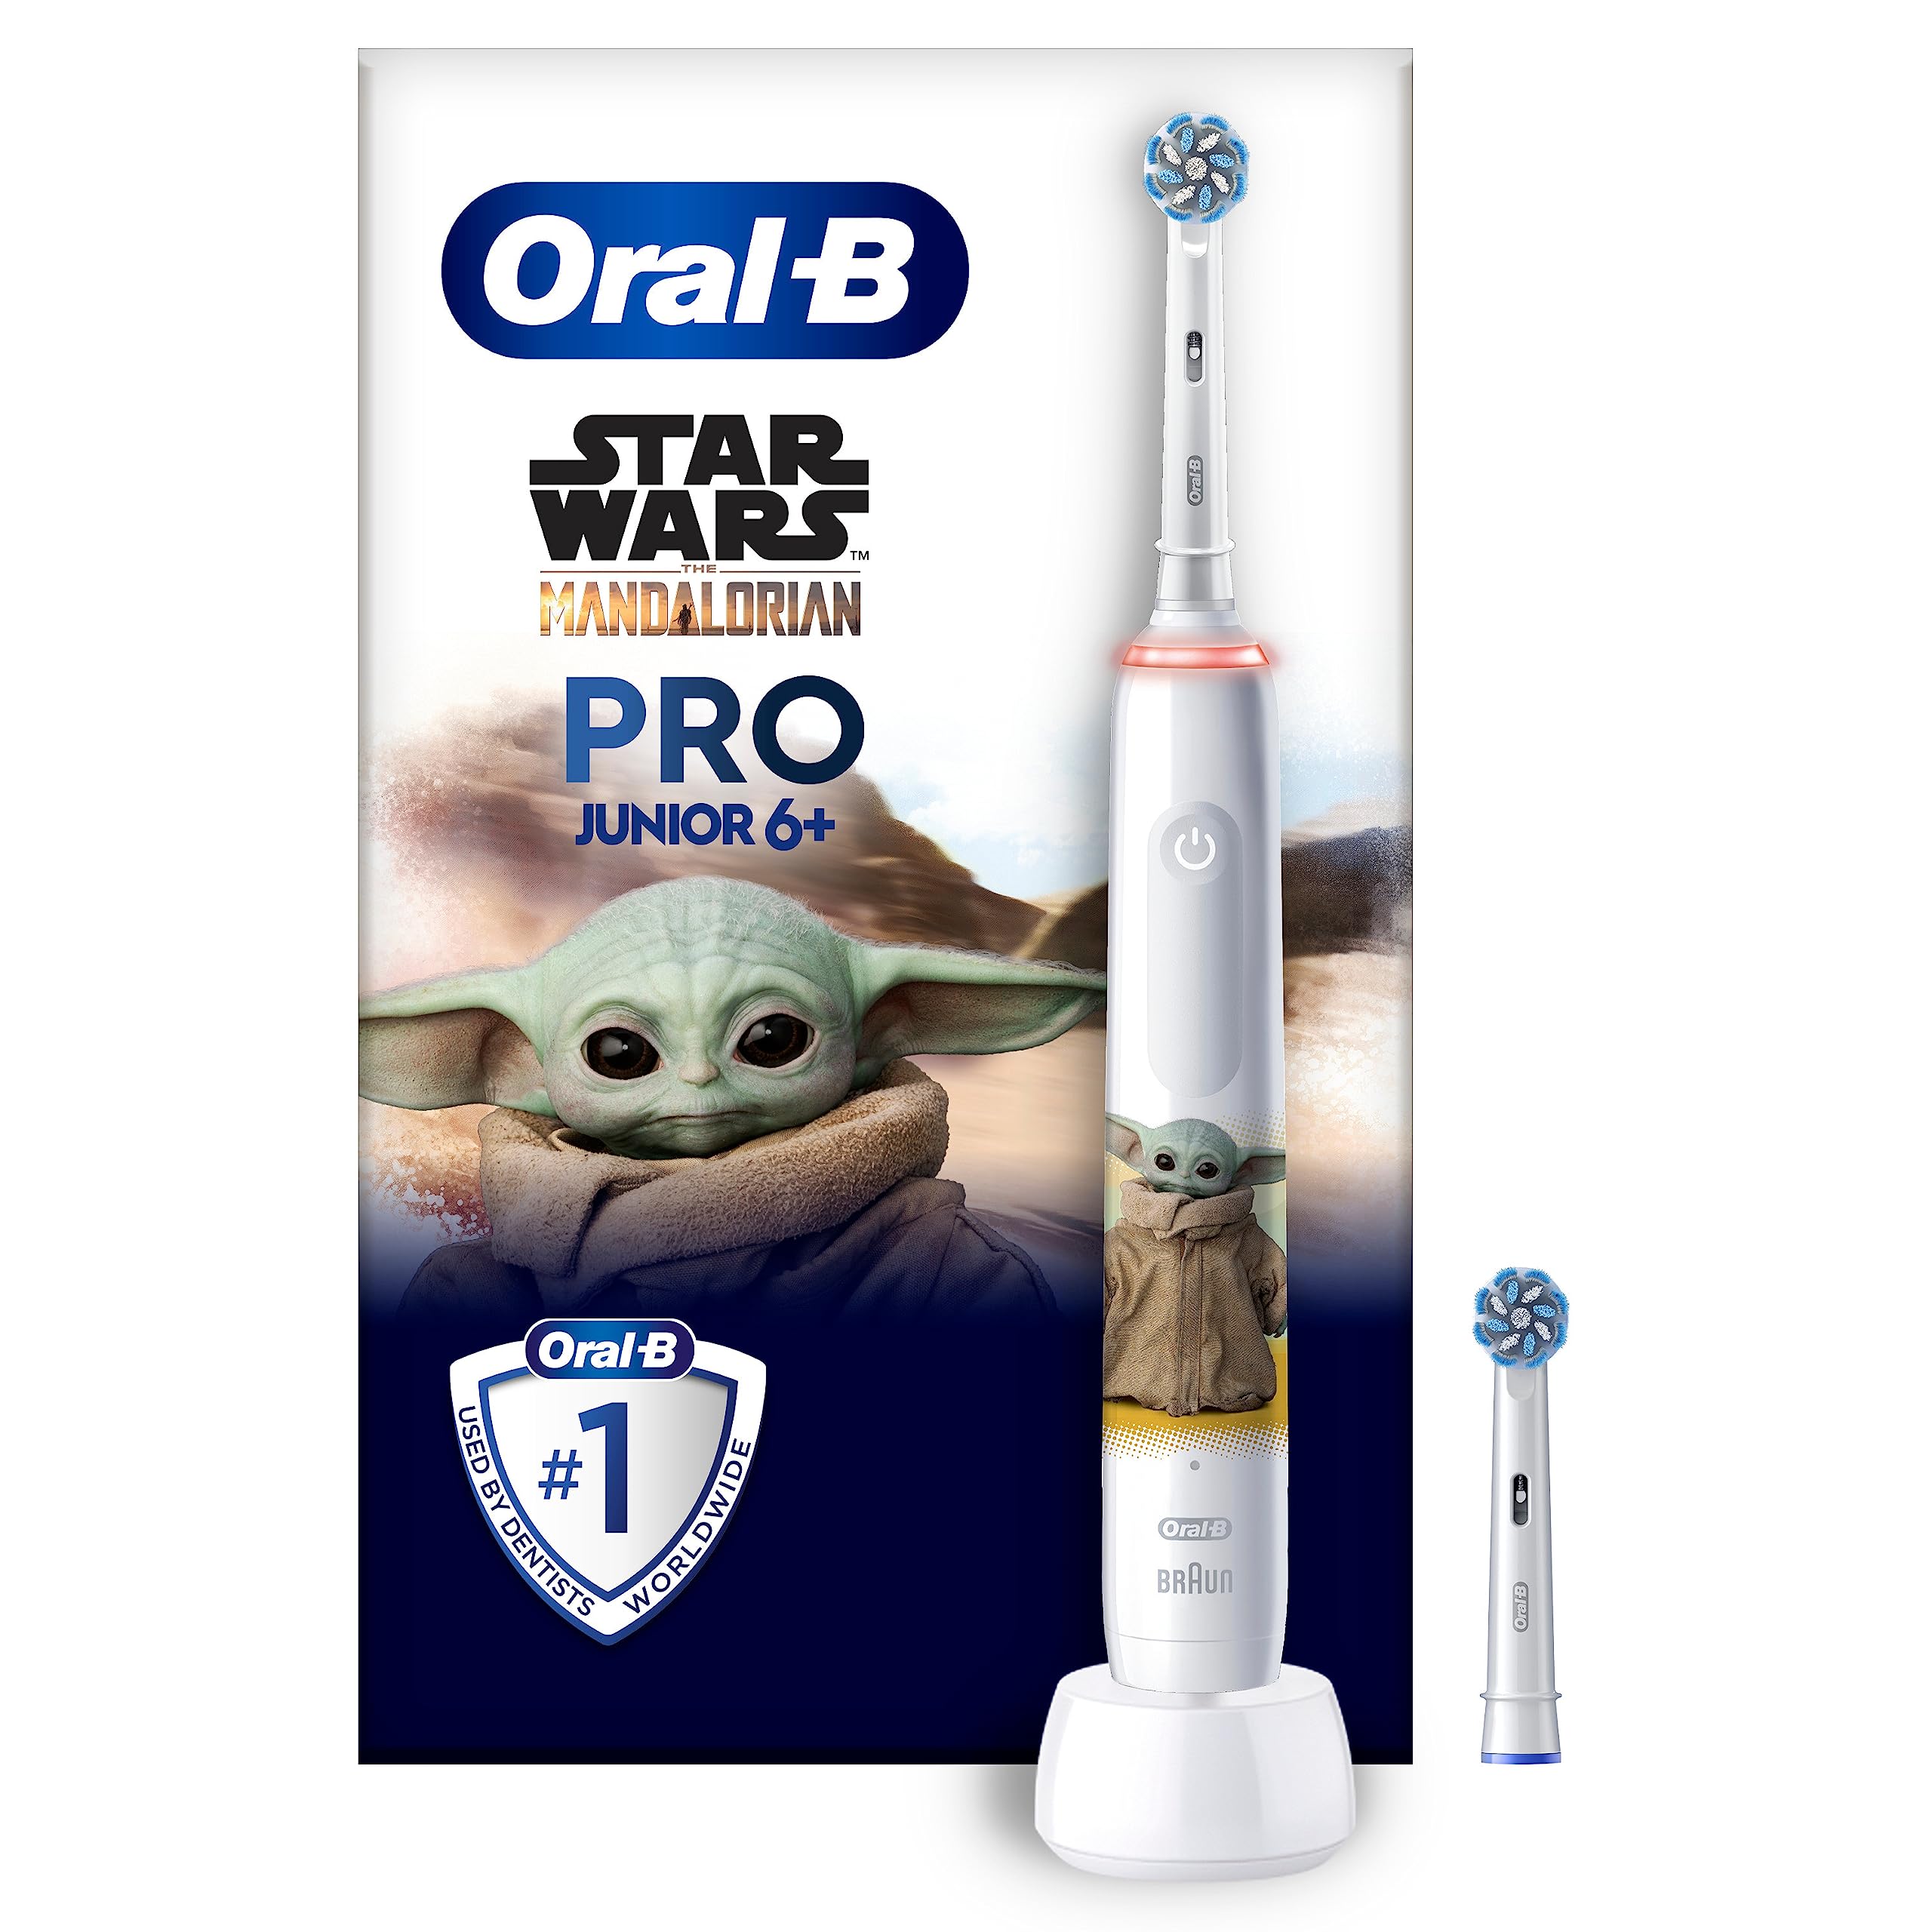 Oral-B Pro Junior Star Wars Elektrische Zahnbürste/Electric Toothbrush für Kinder ab 6 Jahren, 2 Aufsteckbürsten, 360°-Andruckkontrolle, 2 Putzmodi inkl. Sensitiv für Zahnpflege, weiche Borsten, weiß